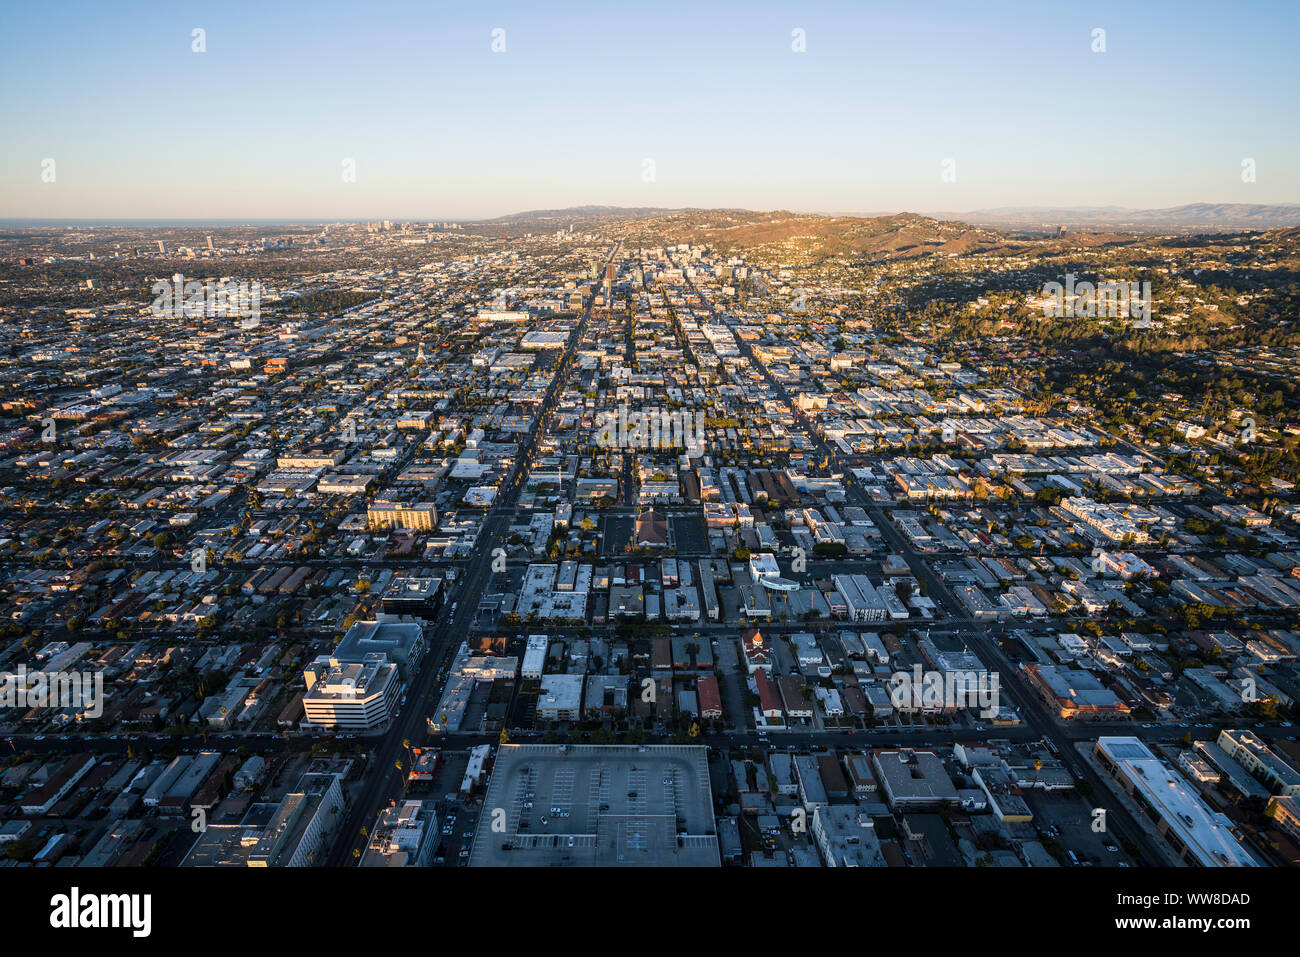 Los Angeles, Californie, USA - 20 Février 2018 : Matin Vue aérienne de toits, les rues et les foyers près de Sunset Boulevard à Hollywood. Banque D'Images